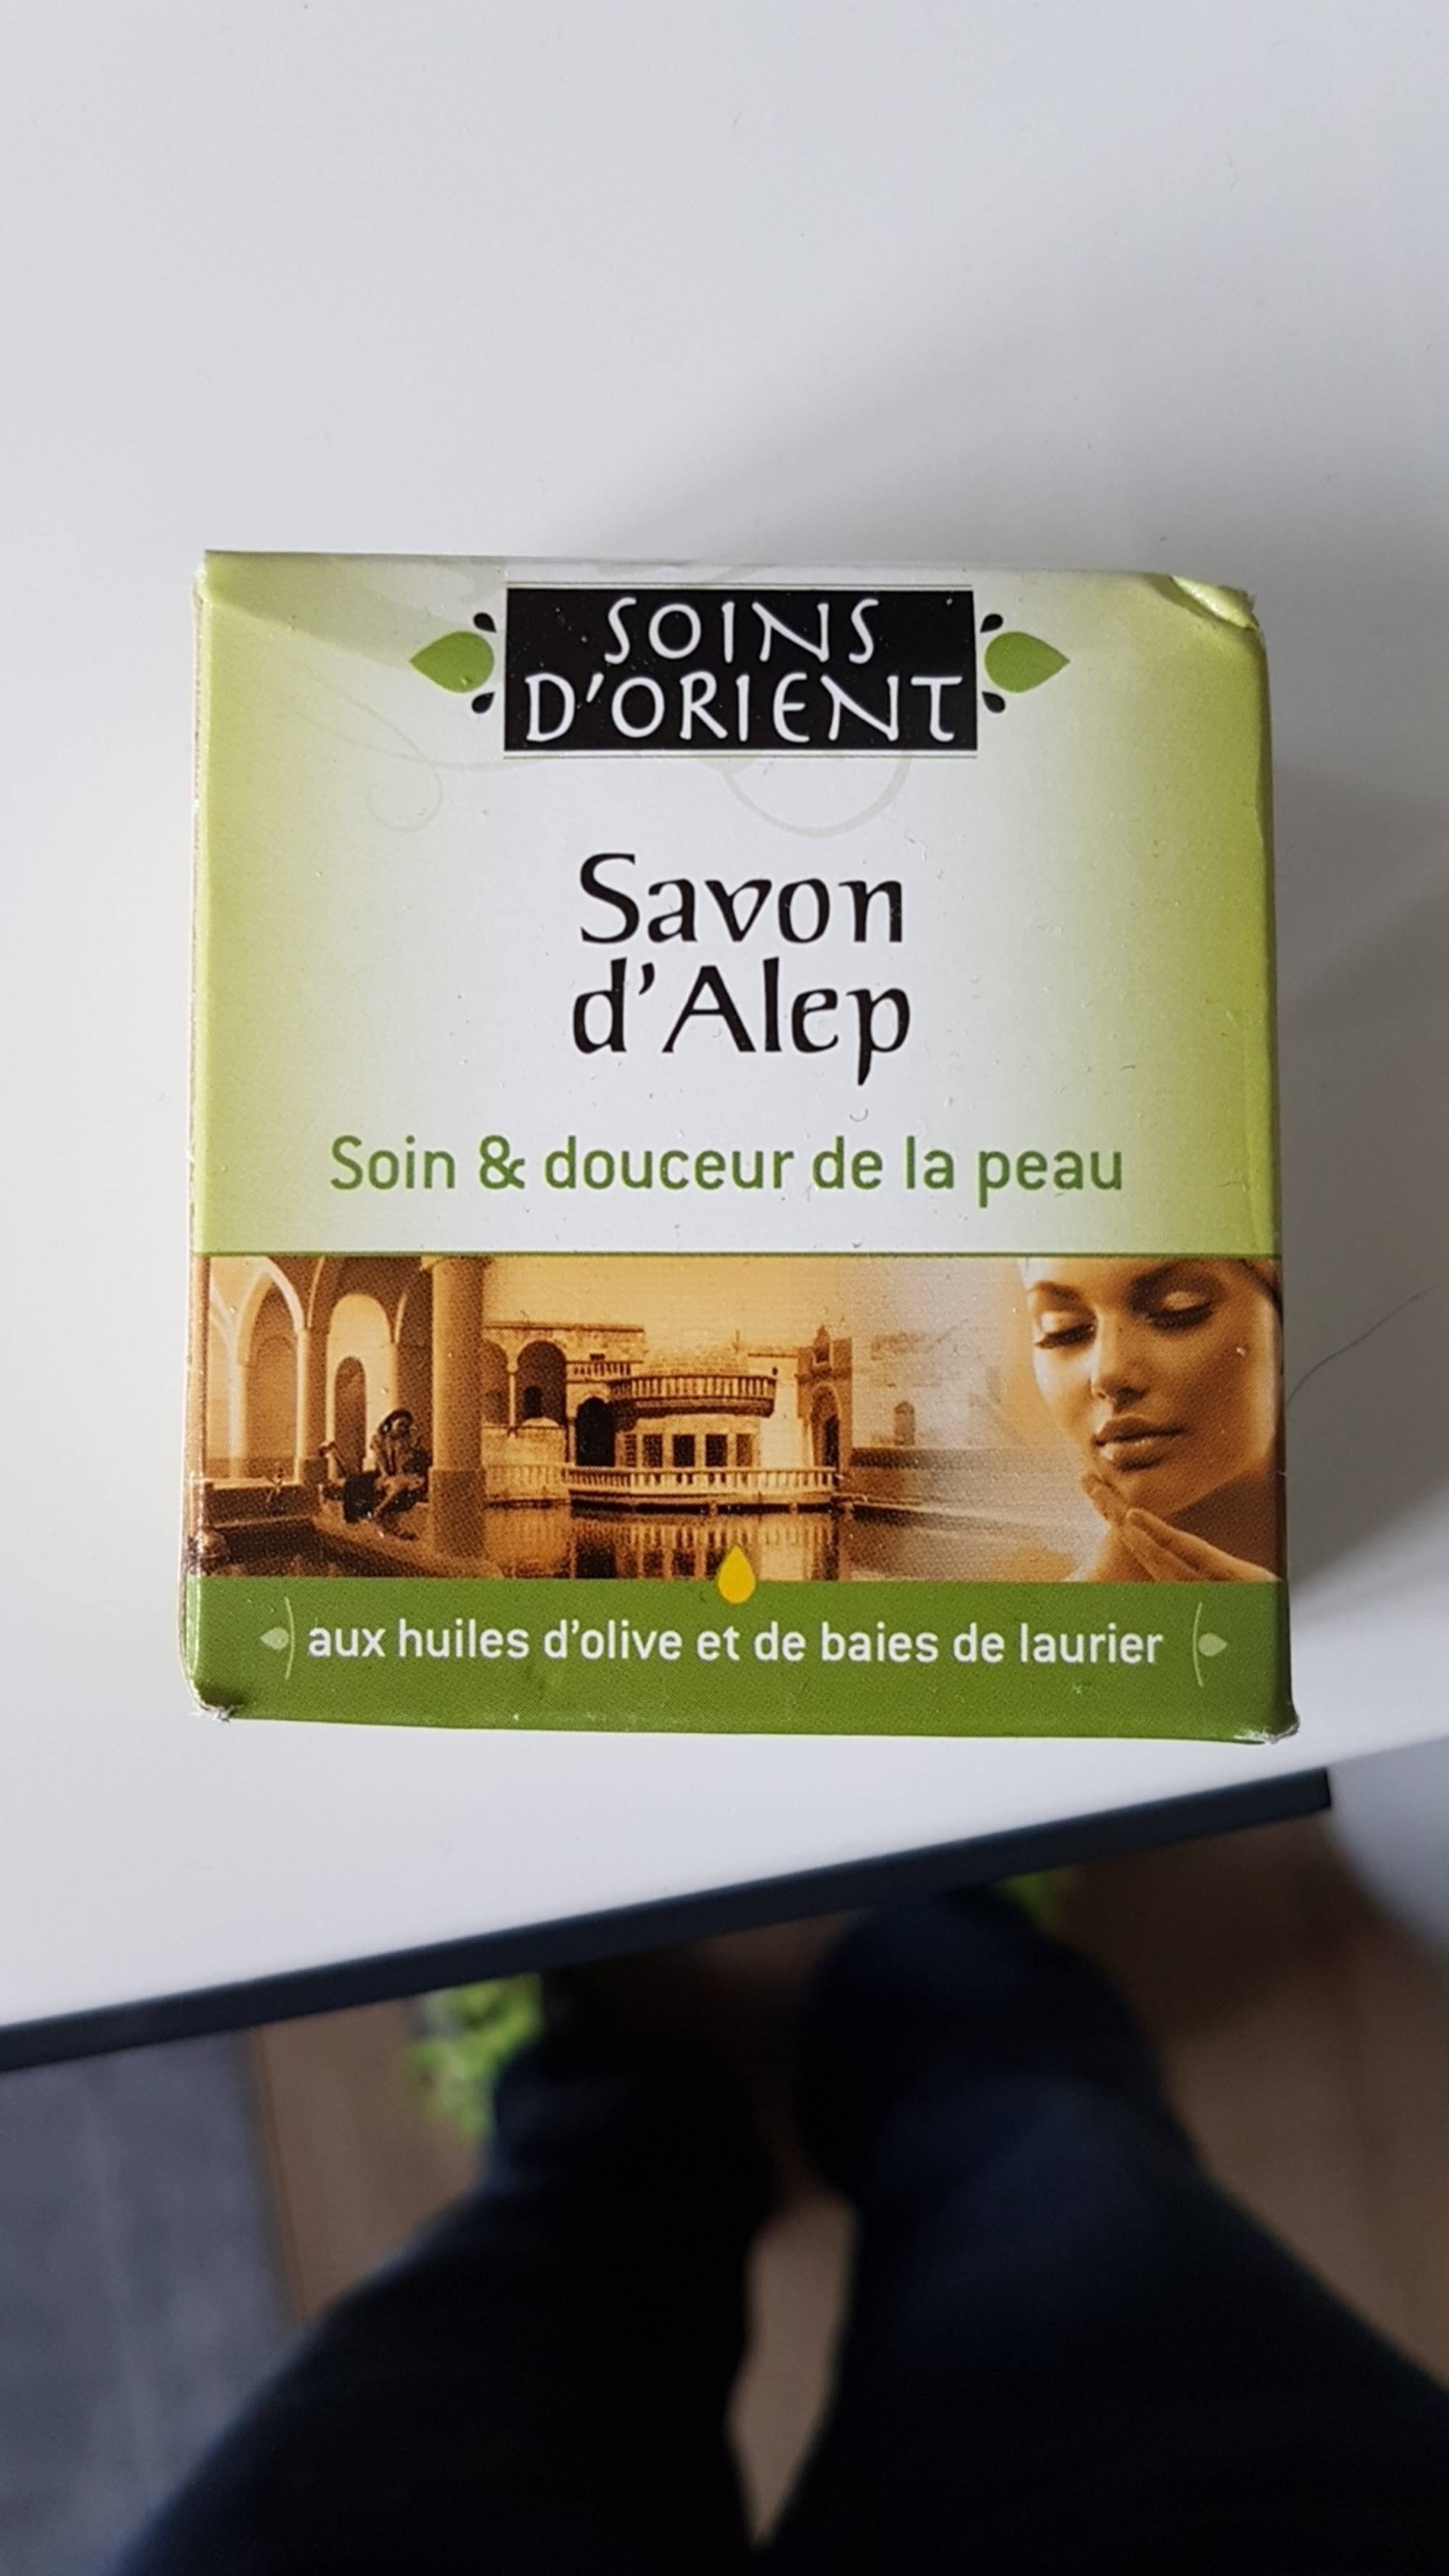 SOINS D'ORIENT - Savon d'Alep - Soin & douceur de la peau aux huiles d'olive et de baies de laurier